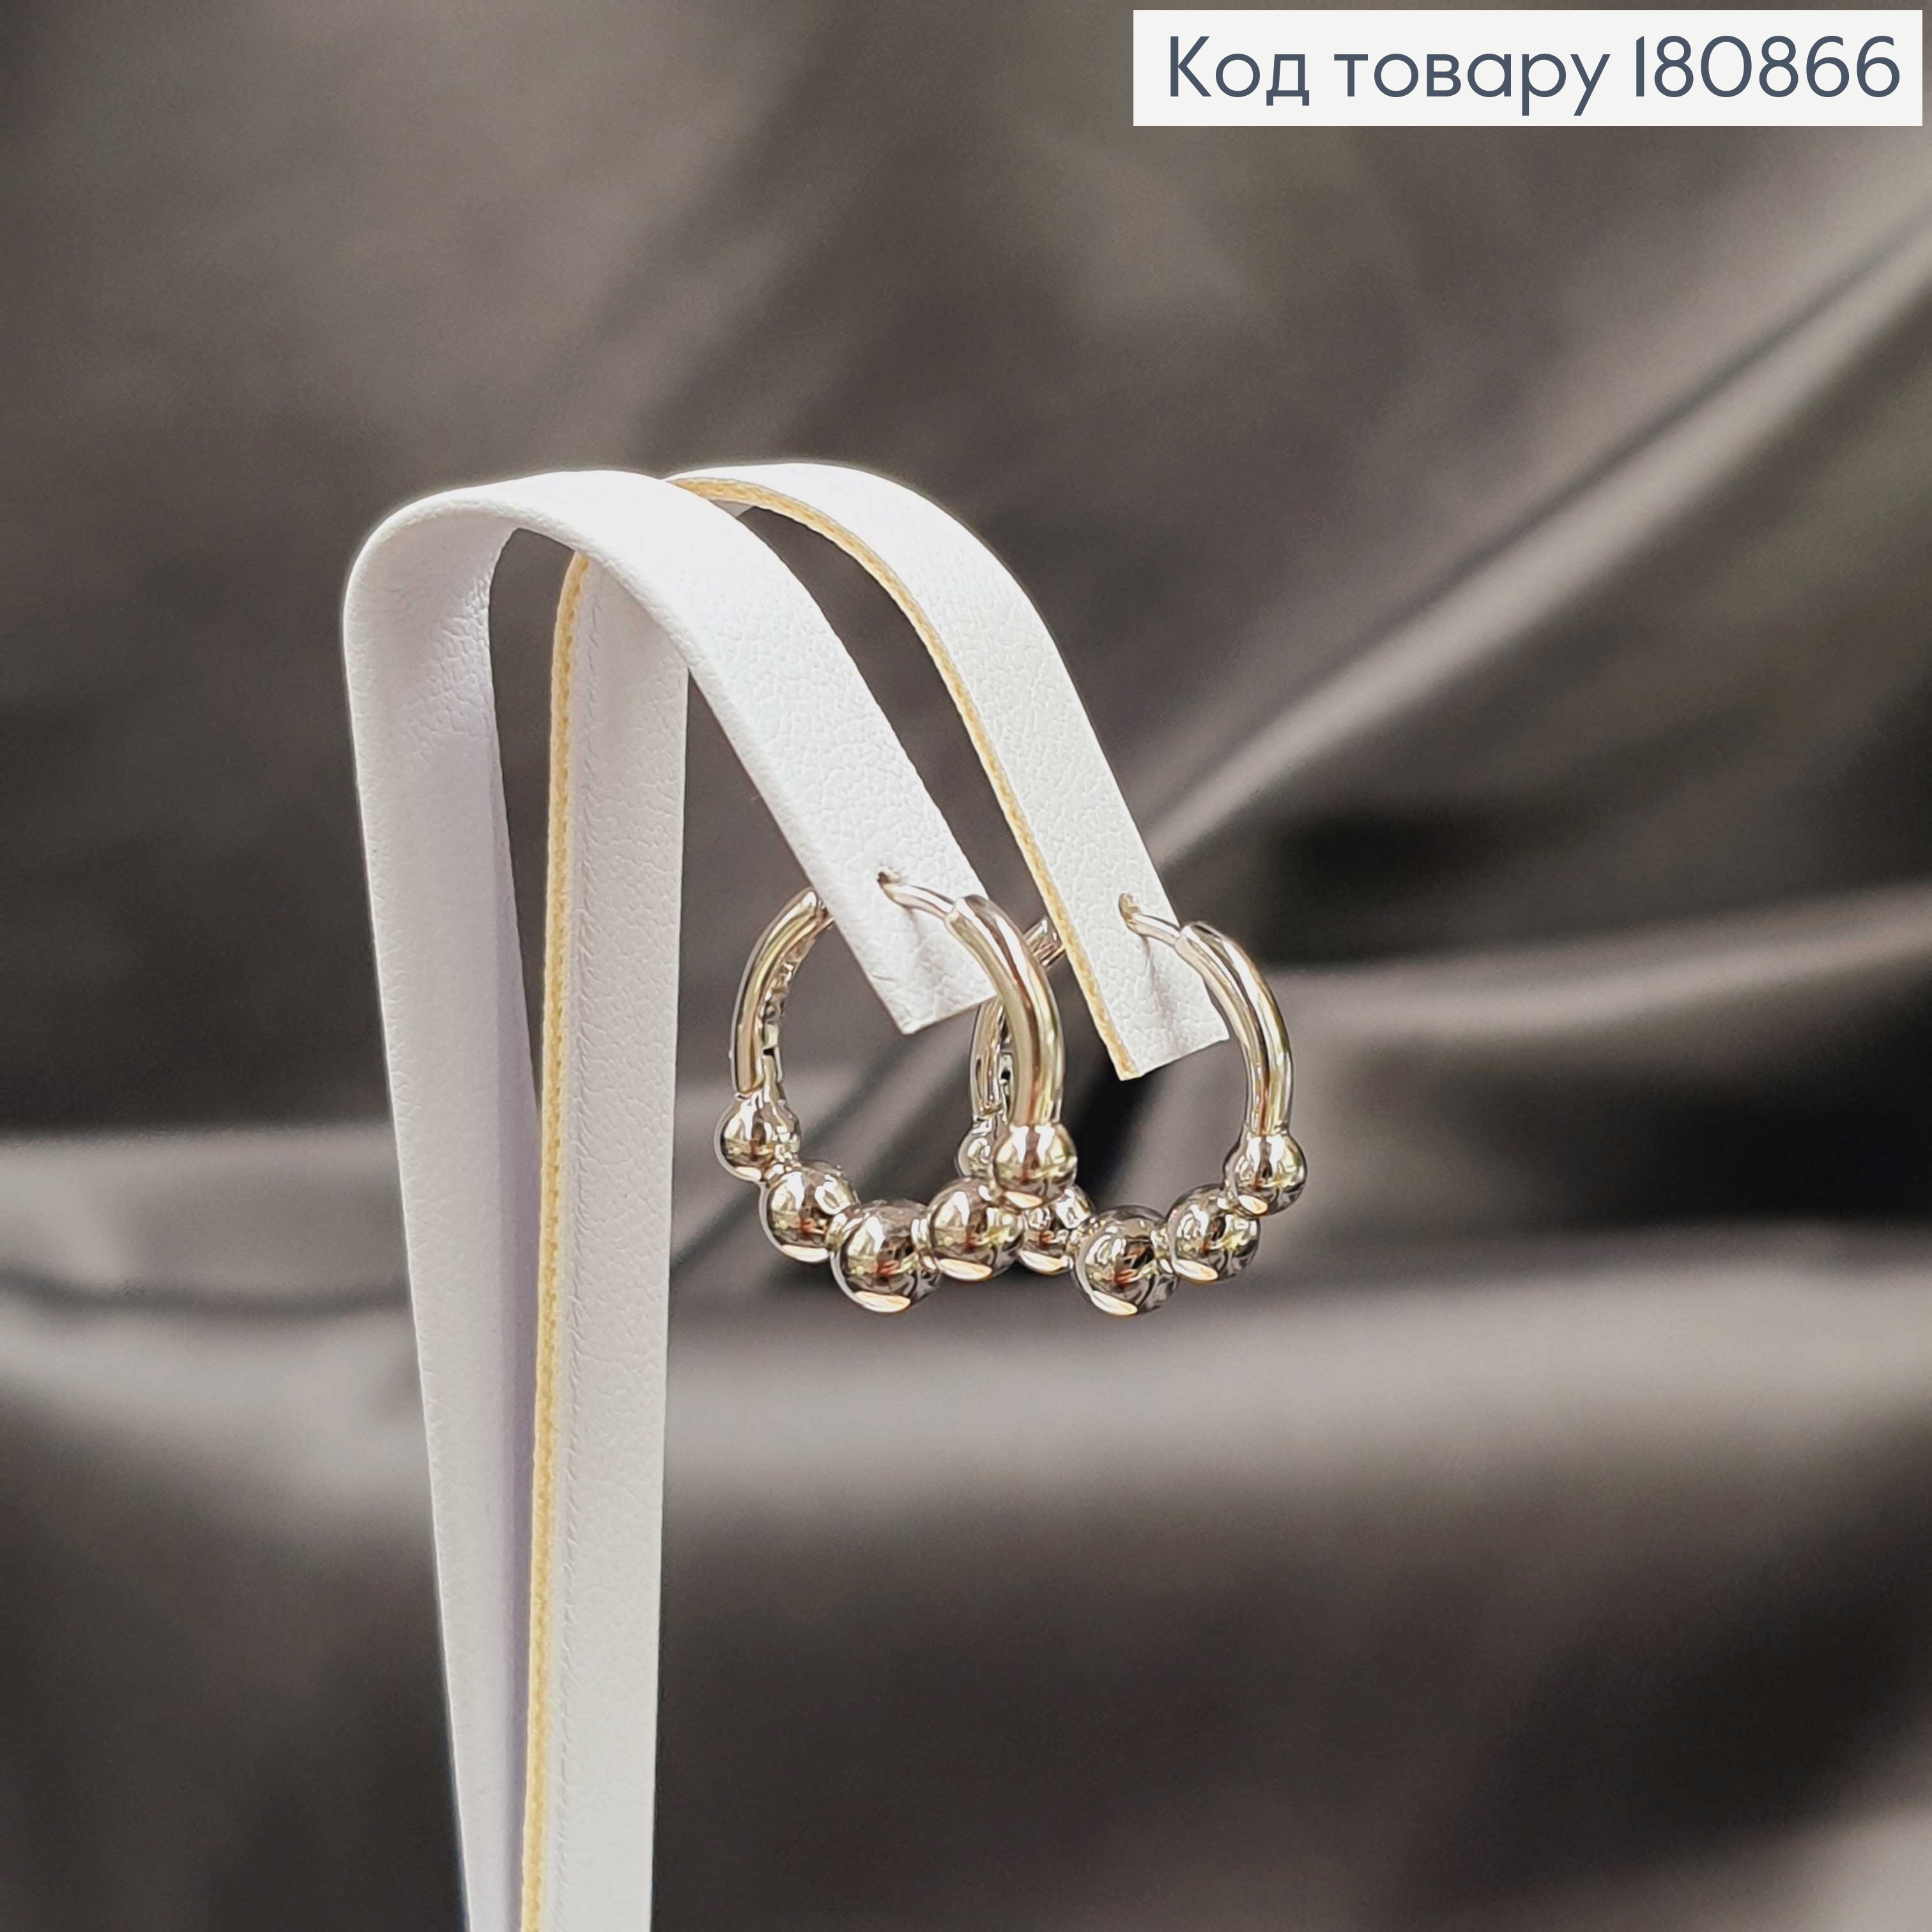 Сережки родированые кольца Шары, 1,5см, Xuping 180866 фото 2